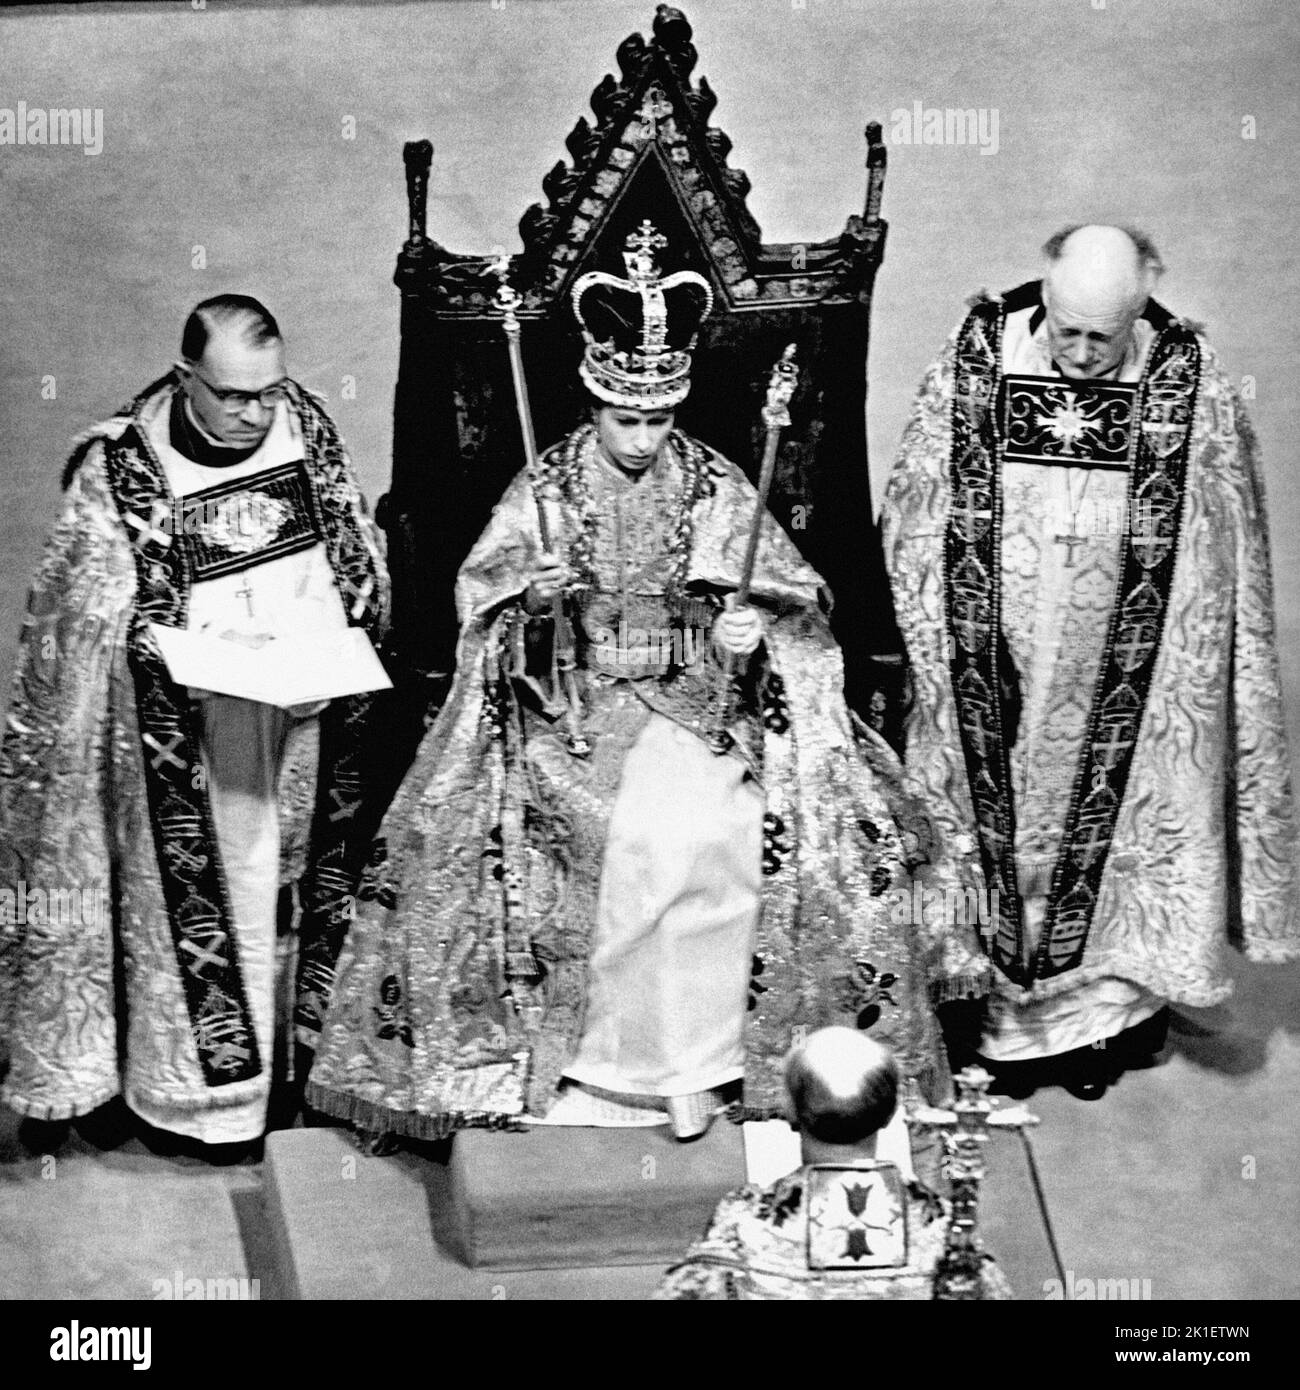 Aktenfoto vom 02/06/53 nach der Krönung in Westminster Abbey, London, zeigt Königin Elizabeth II., die die St. Edward-Krone trägt und das Zepter und den Stab trägt. Ausgabedatum: Sonntag, 18. September 2022.. Bildnachweis sollte lauten: PA Wire Stockfoto